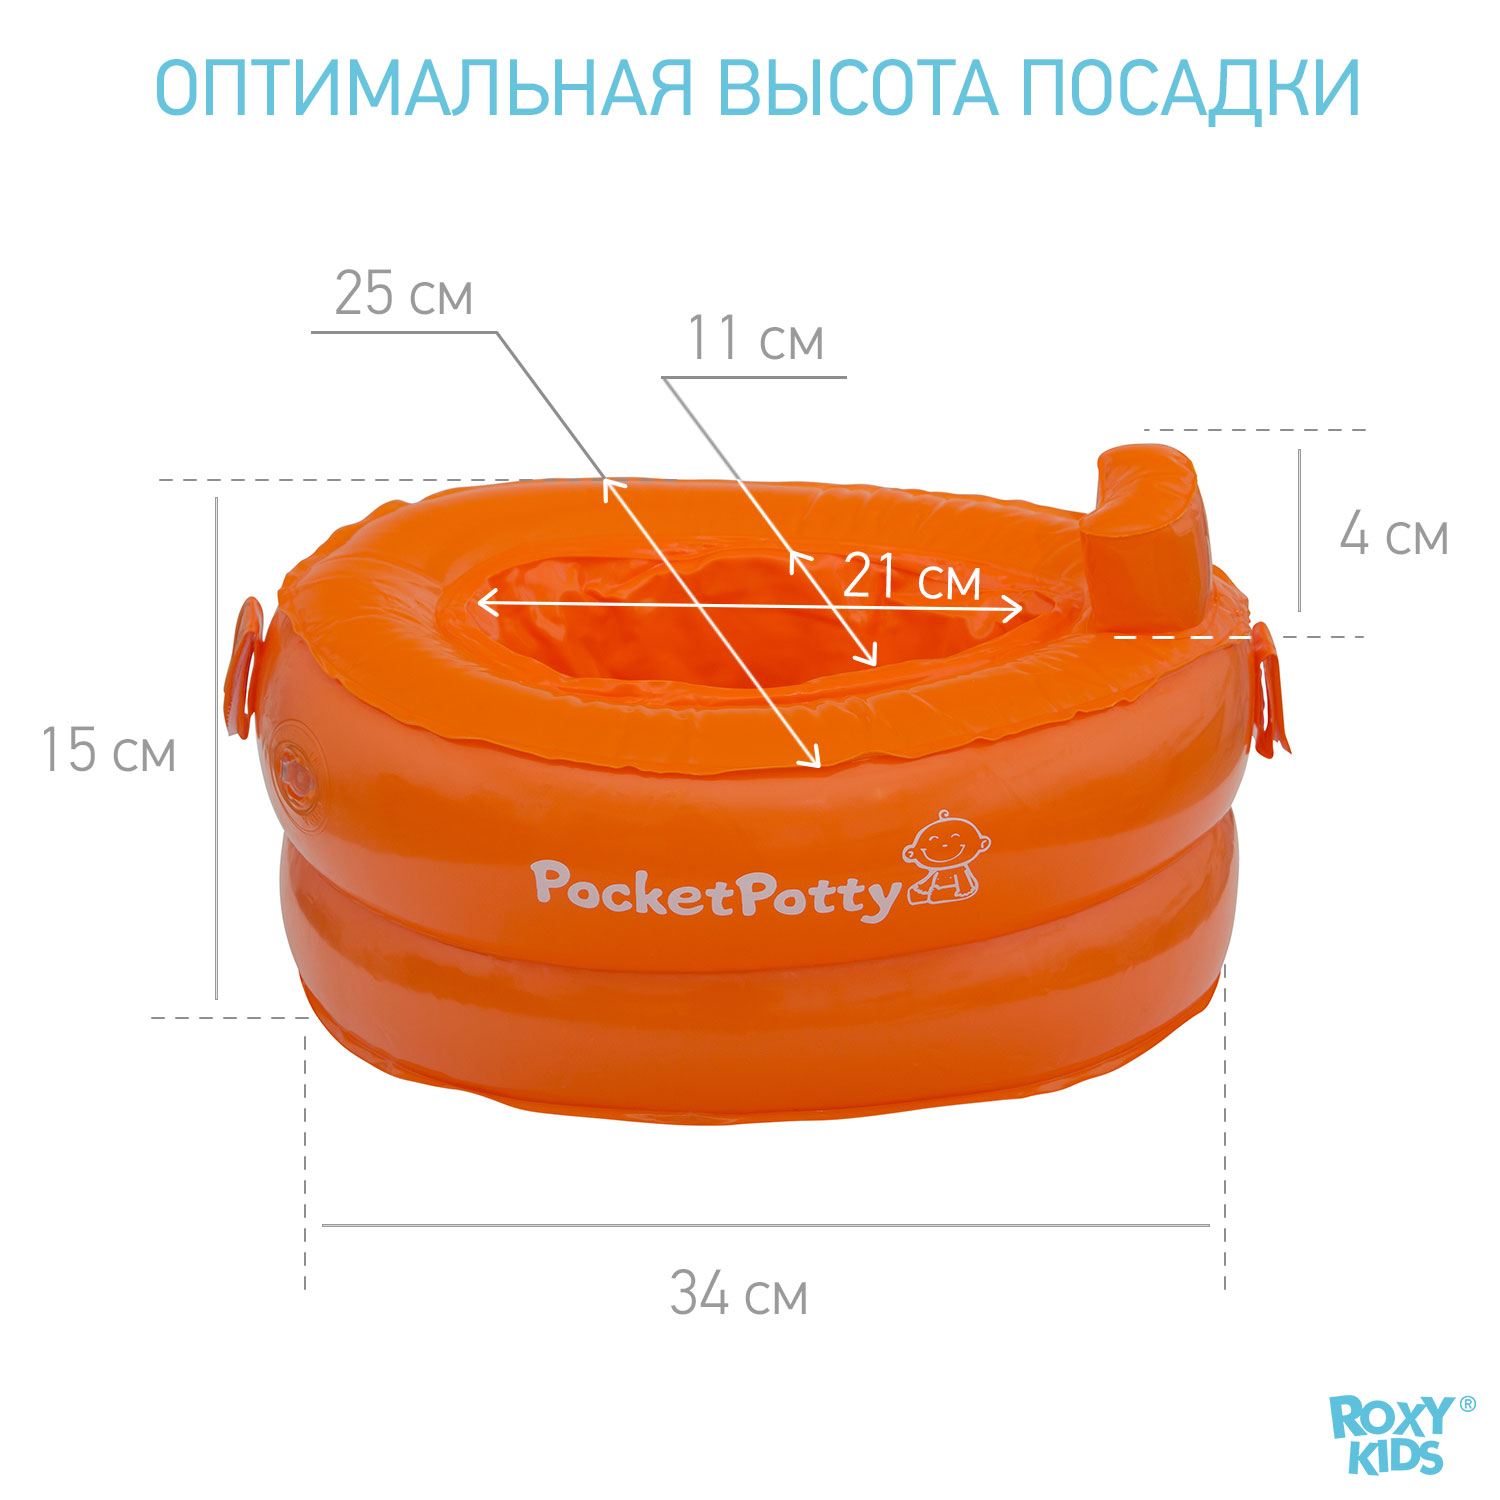 Горшок дорожный ROXY-KIDS надувной для детей PocketPotty цвет оранжевый - фото 5